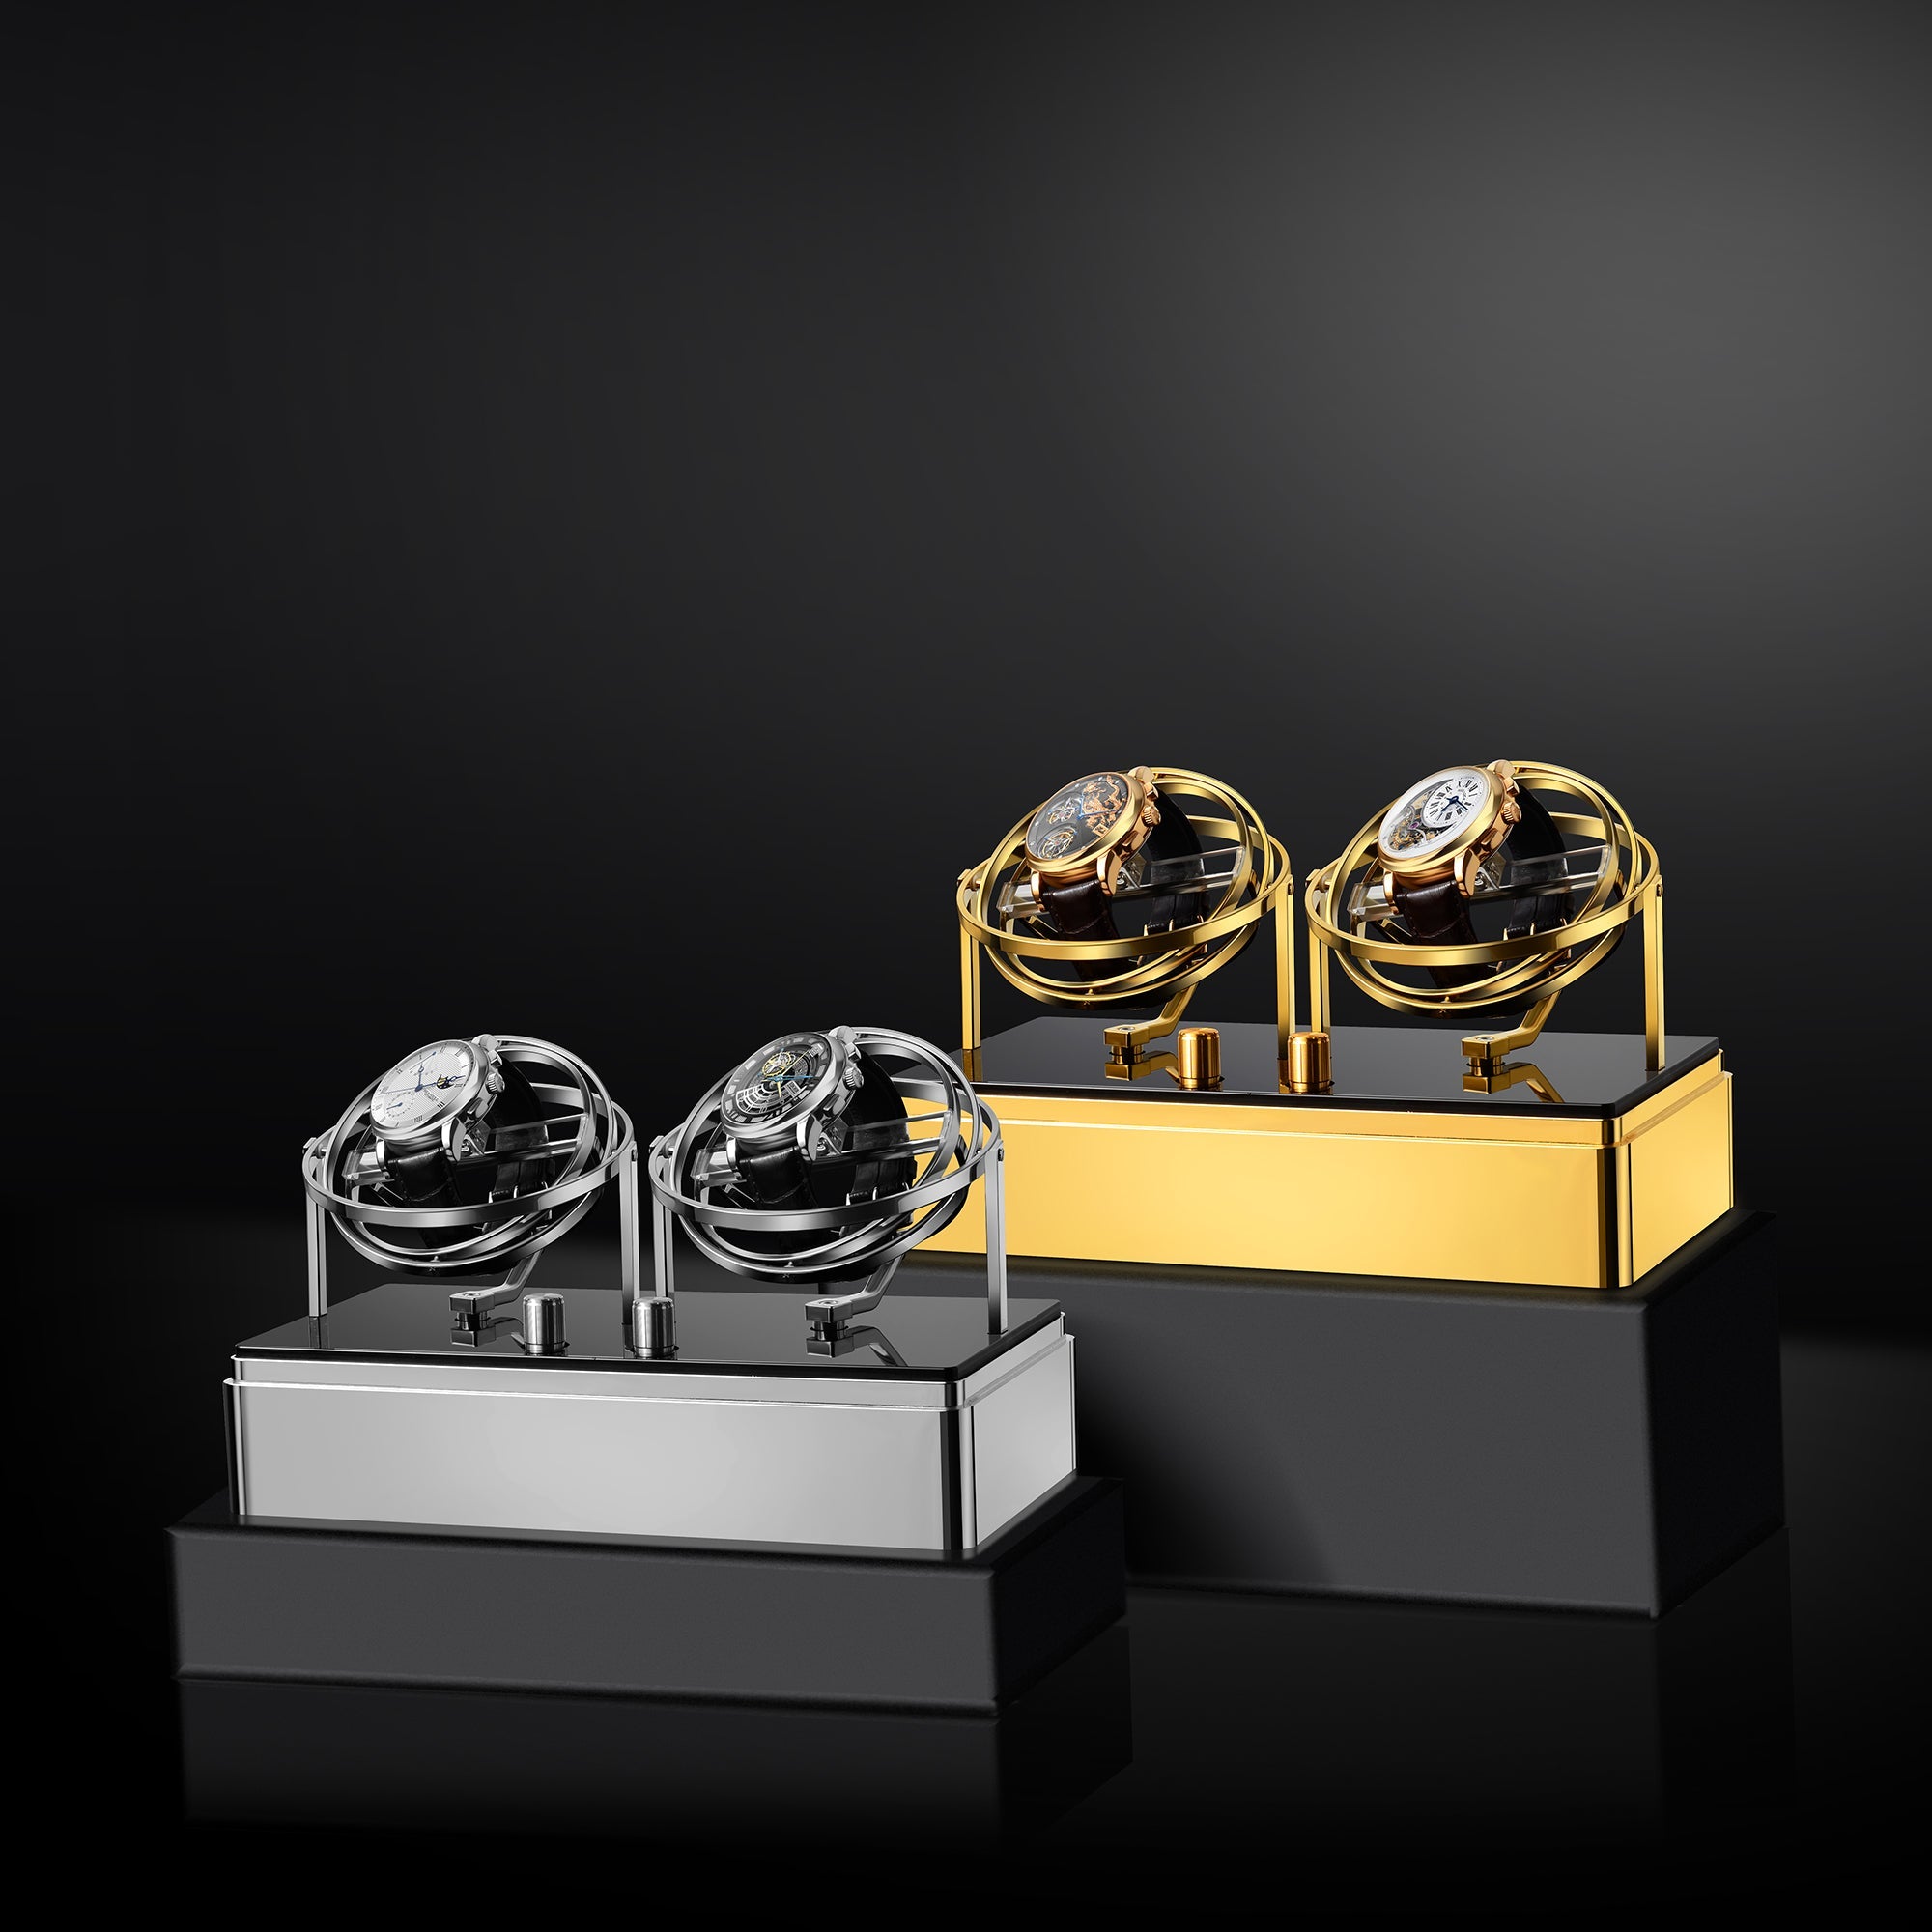 Watch Winder - Orbit Y2 Silver Edition - Gyro Automatic Watch Winder